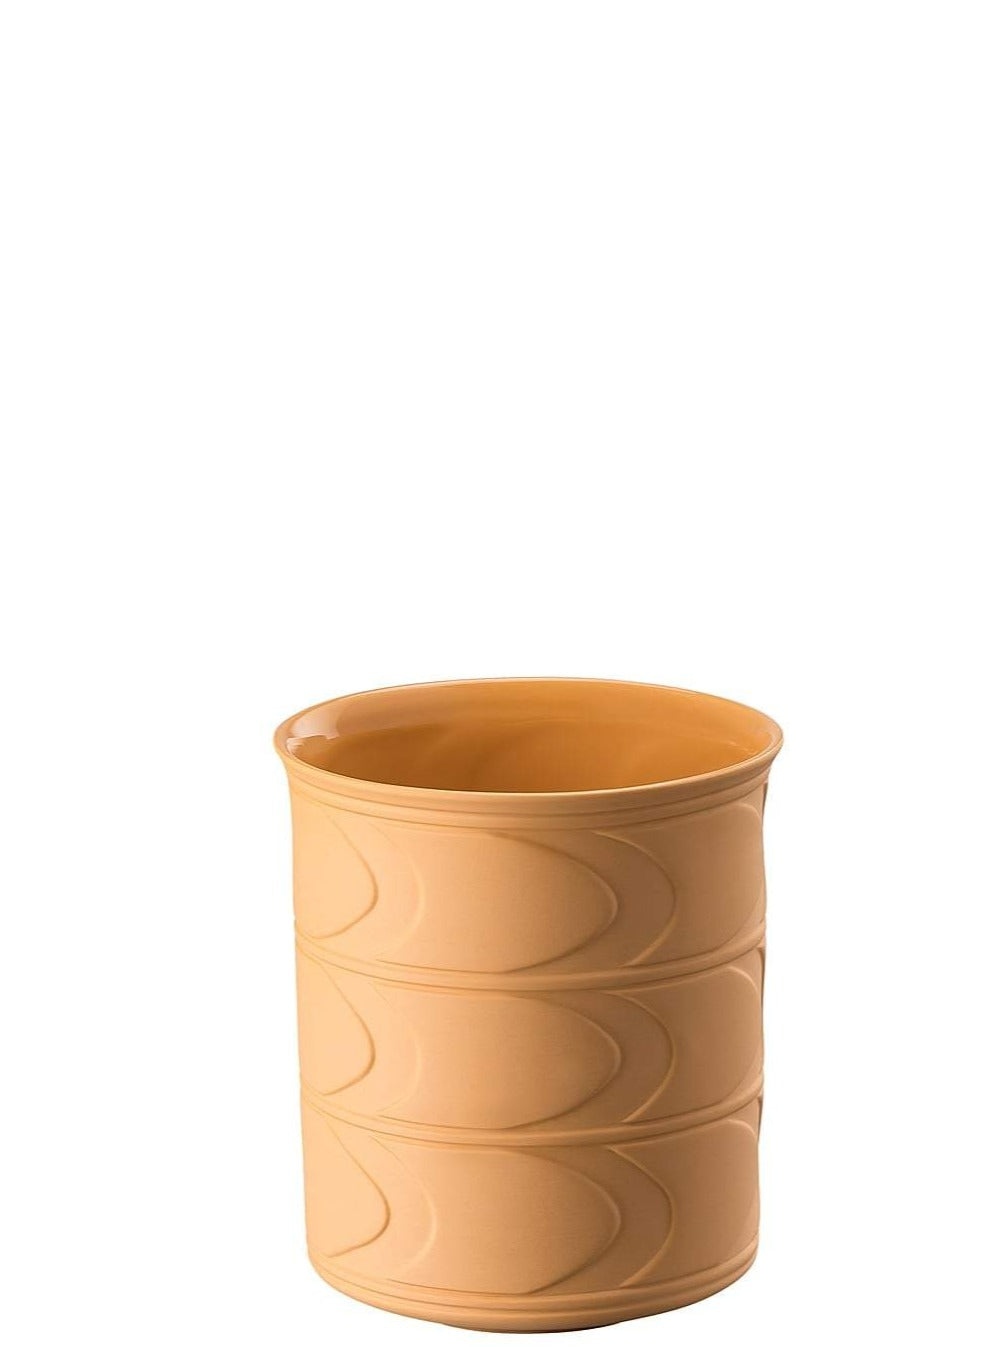 Byzance Tangerine Vase 15 cm